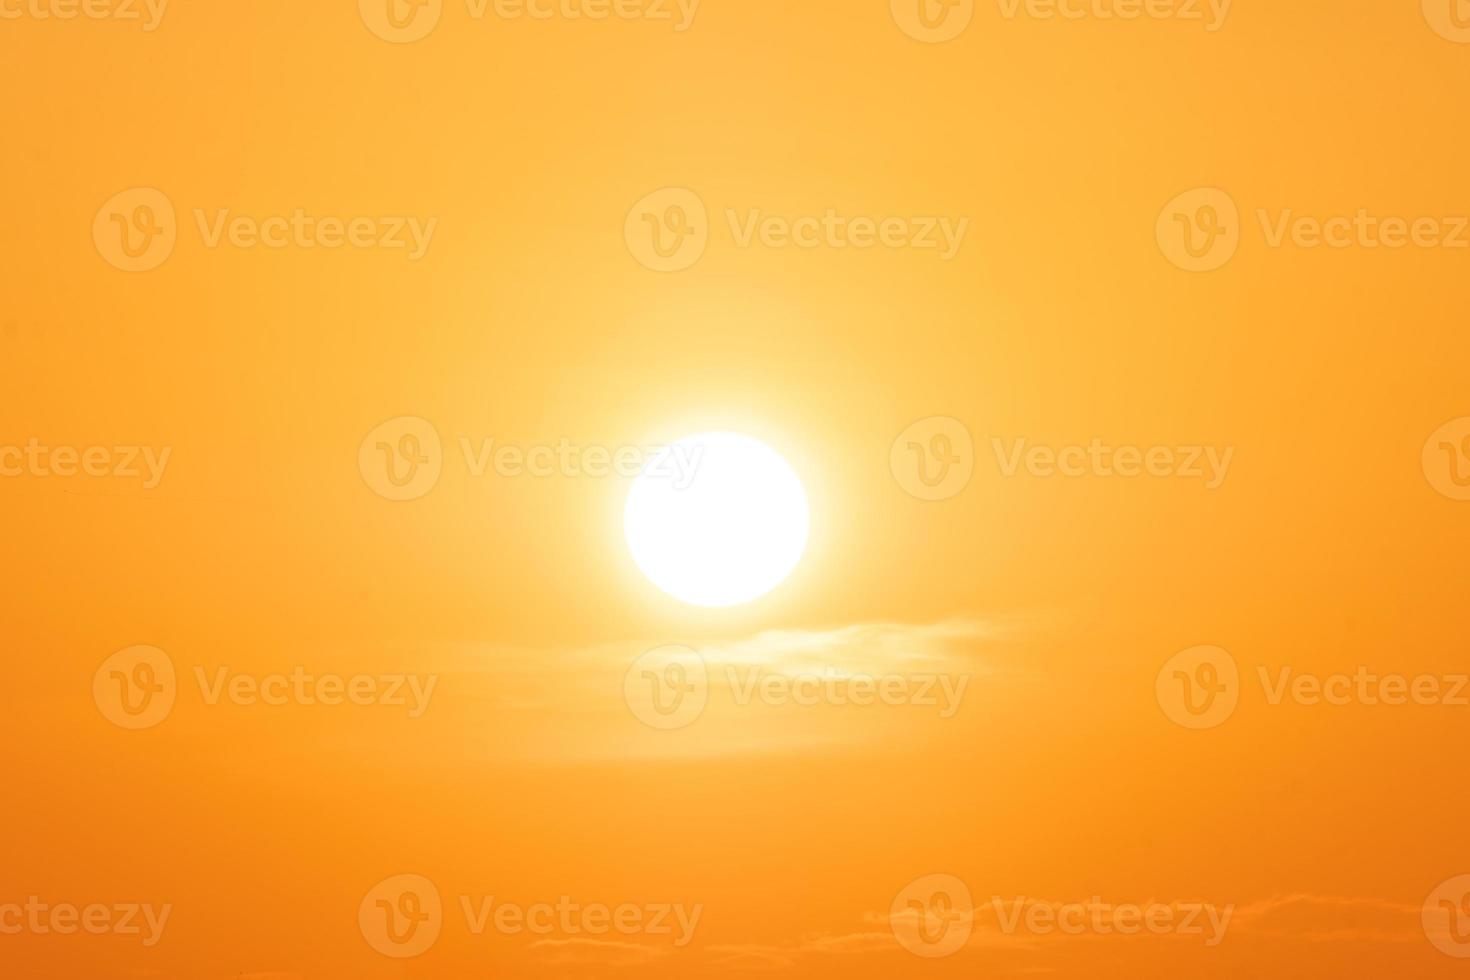 schöne orangefarbene Wolken mit Farbverlauf und Sonnenlicht am blauen Himmel, perfekt für den Hintergrund, nehmen Sie die Abenddämmerung auf foto